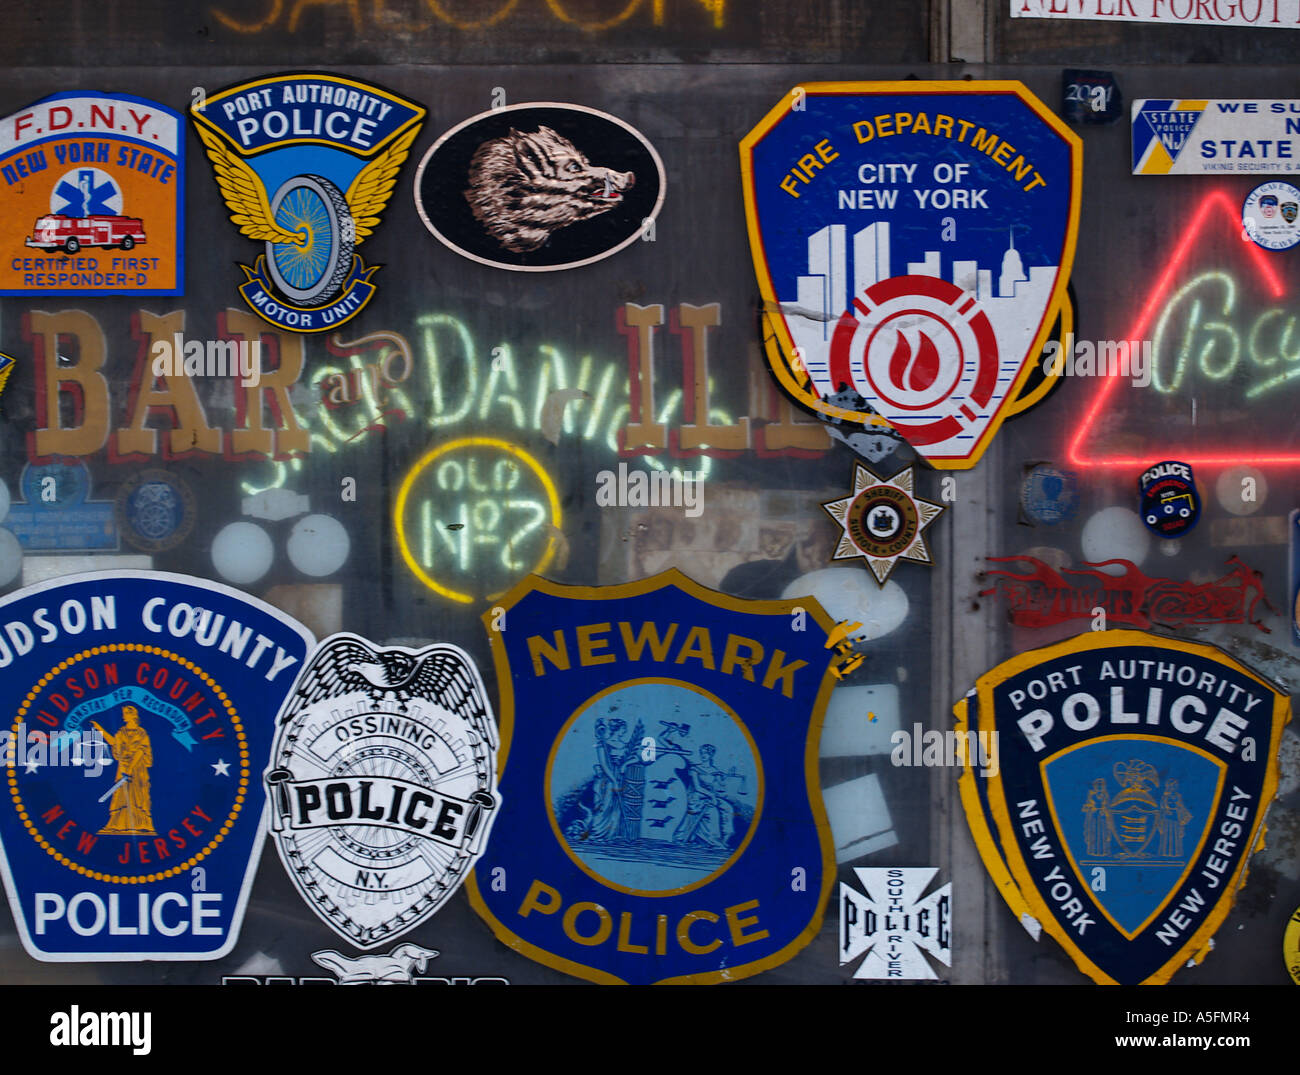 Polizei und Feuerwehr von New York City Abzeichen in einem Fenster der bar Stockfoto